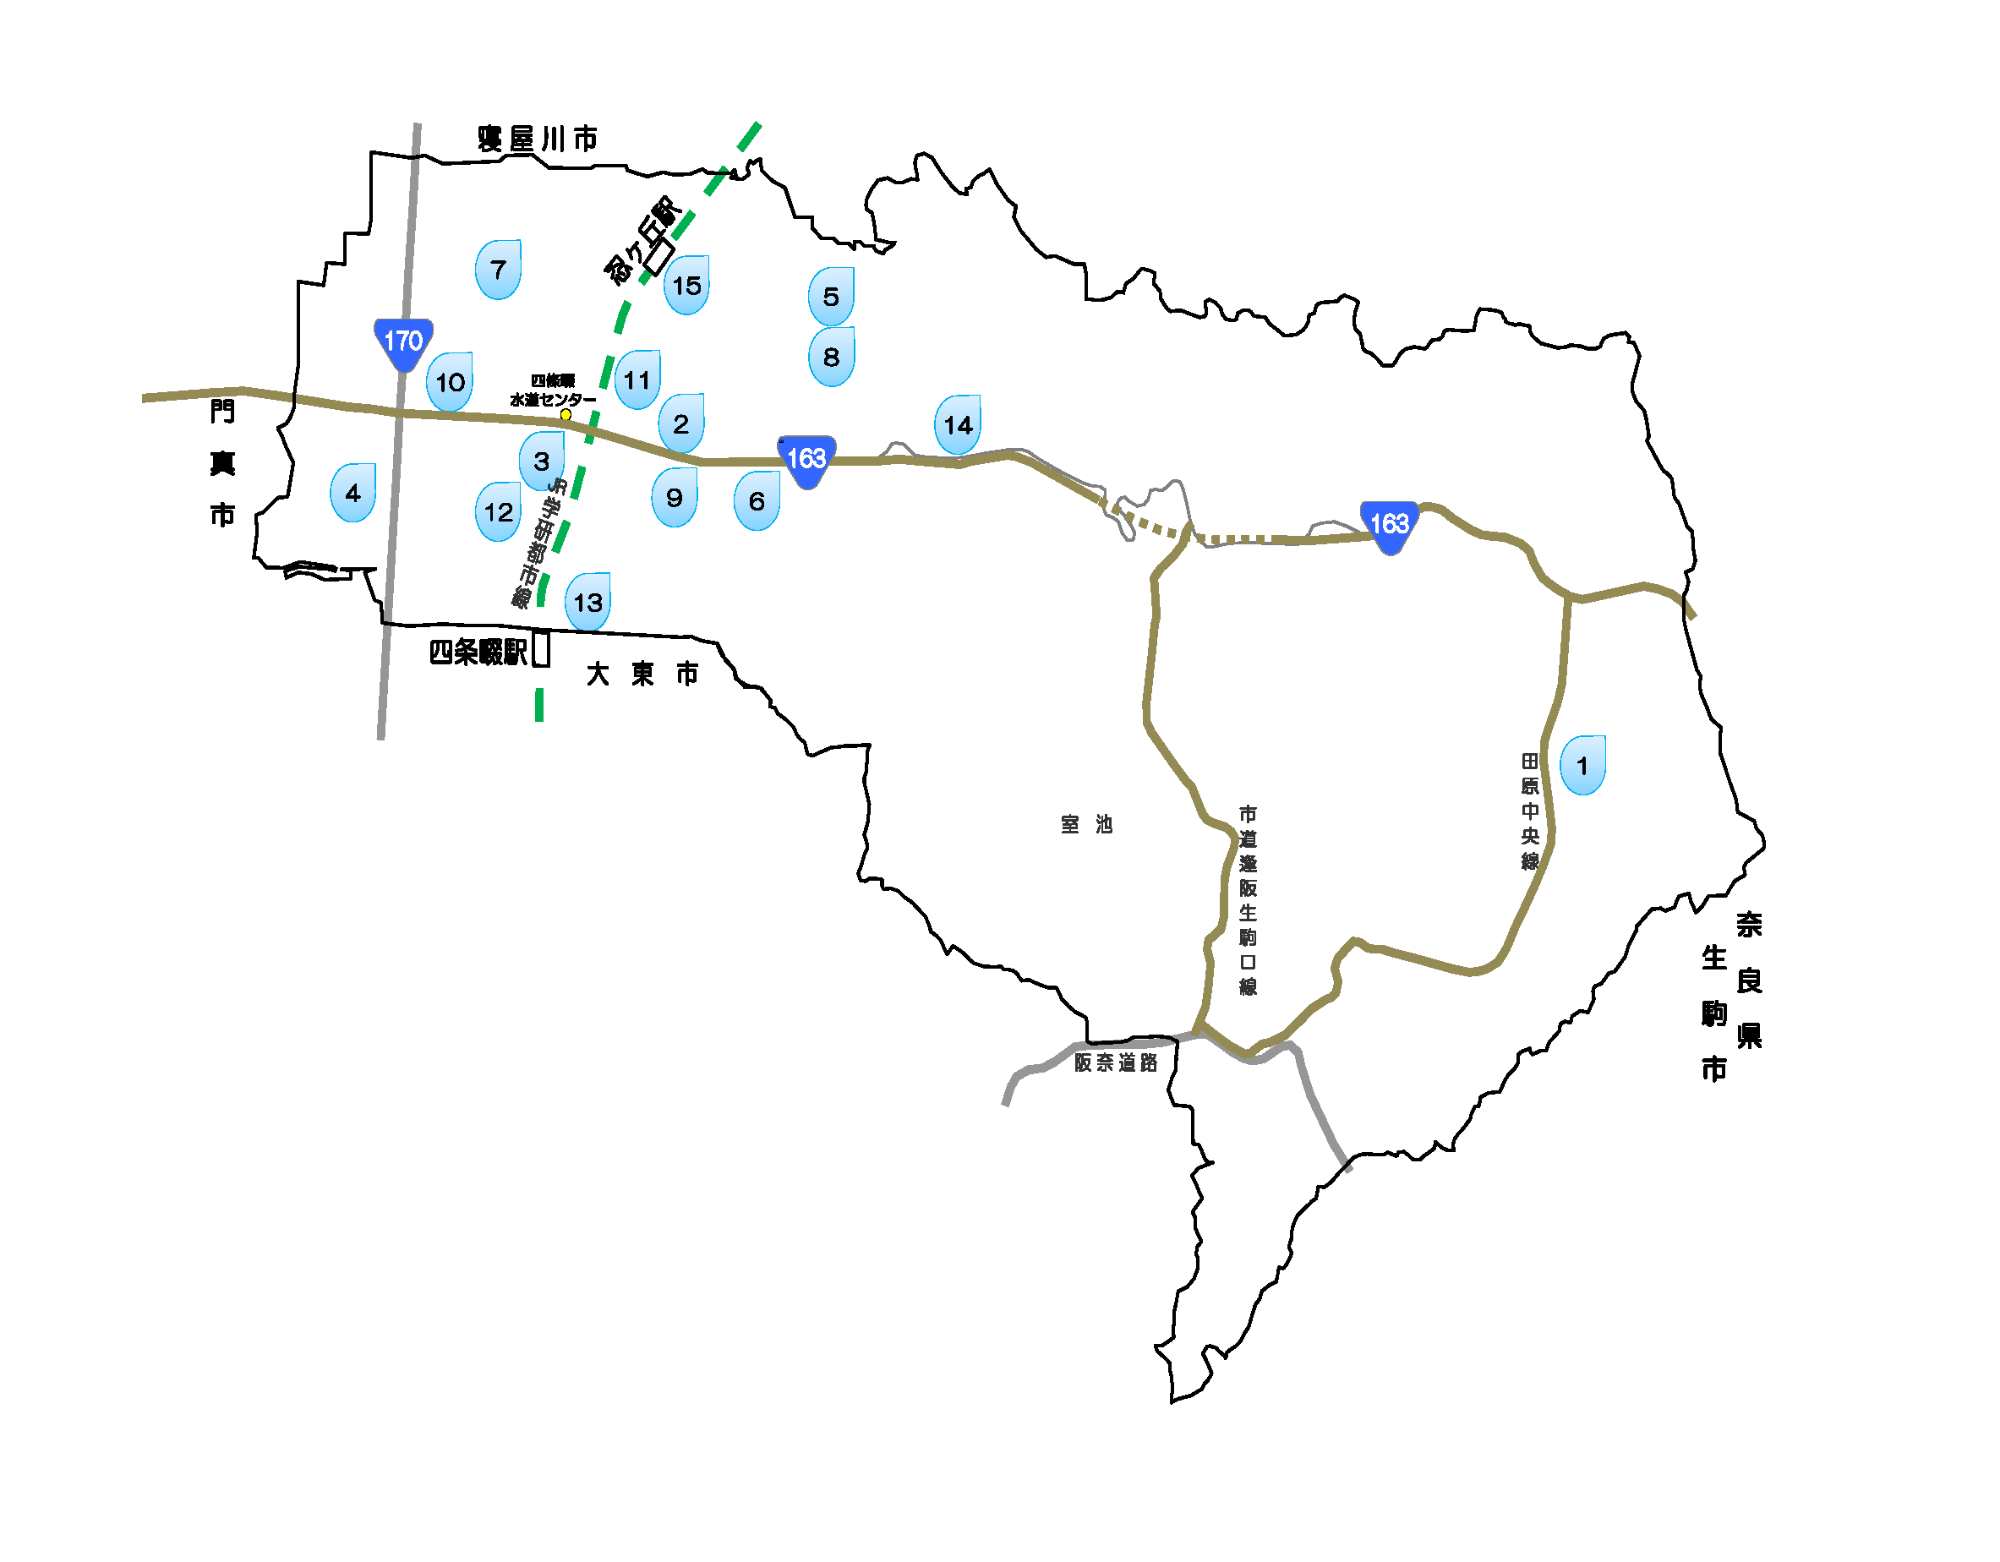 応急給水拠点の位置が記された地図